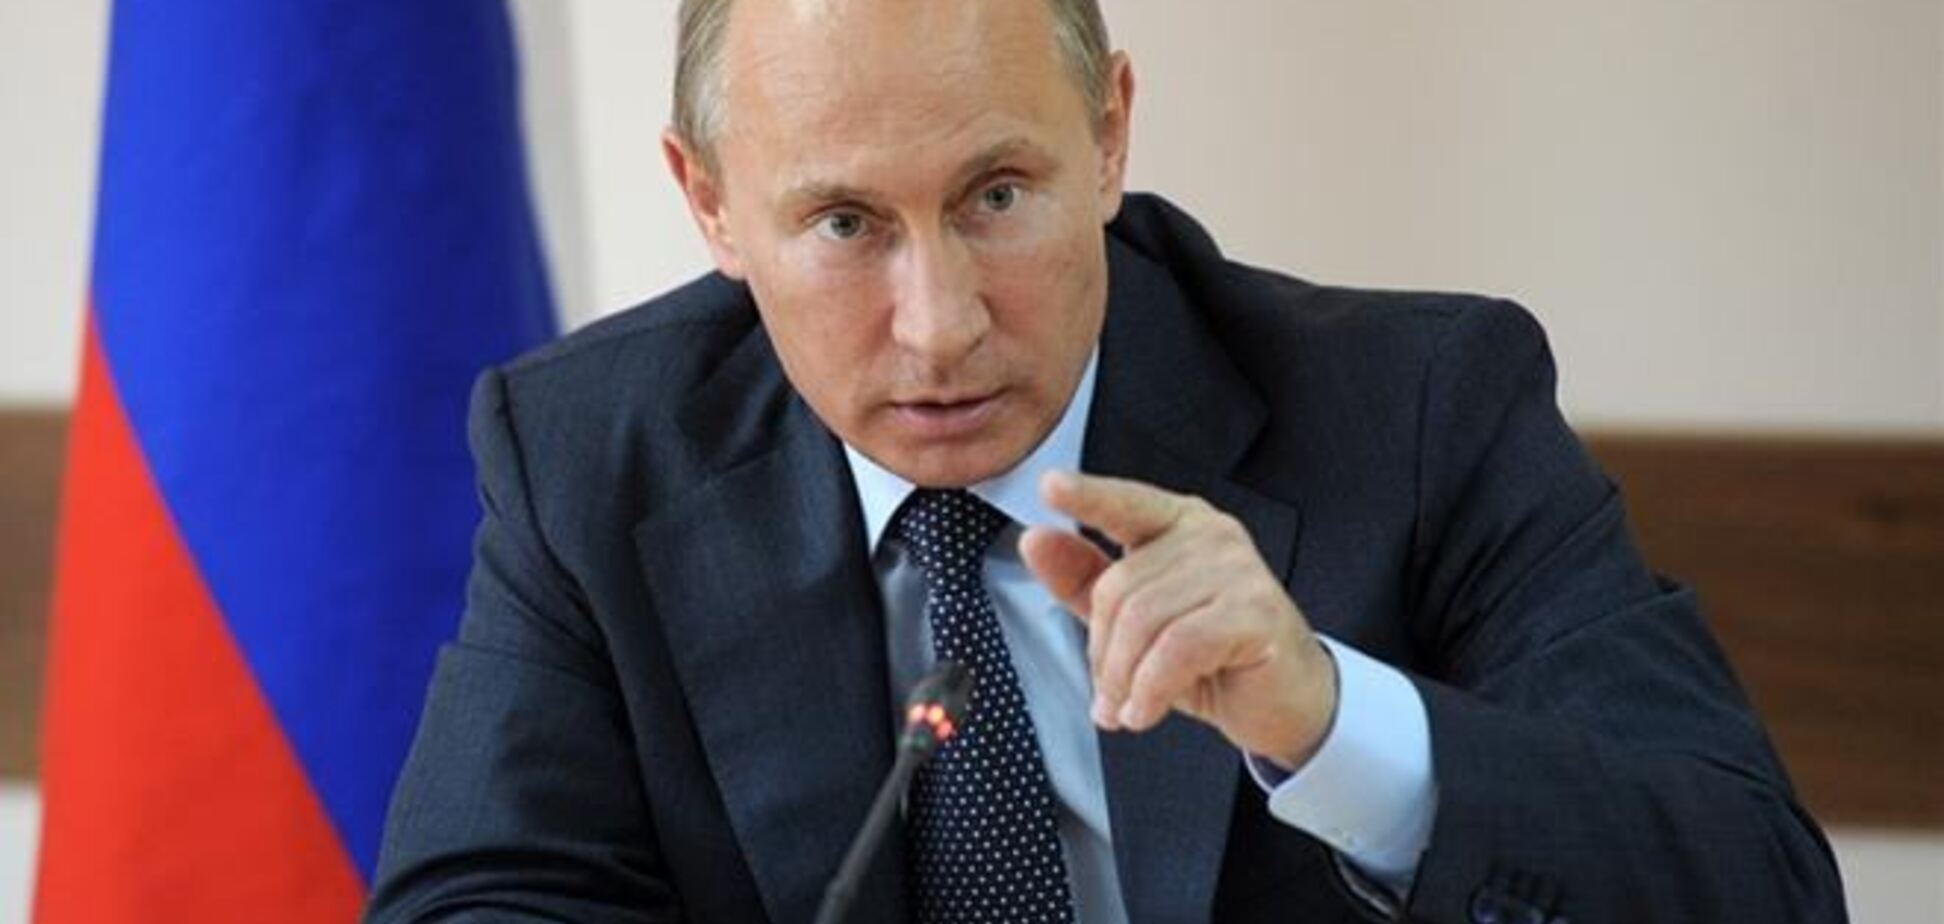 Путін 18 березня звернеться до Федеральних зборів з приводу приєднання Криму